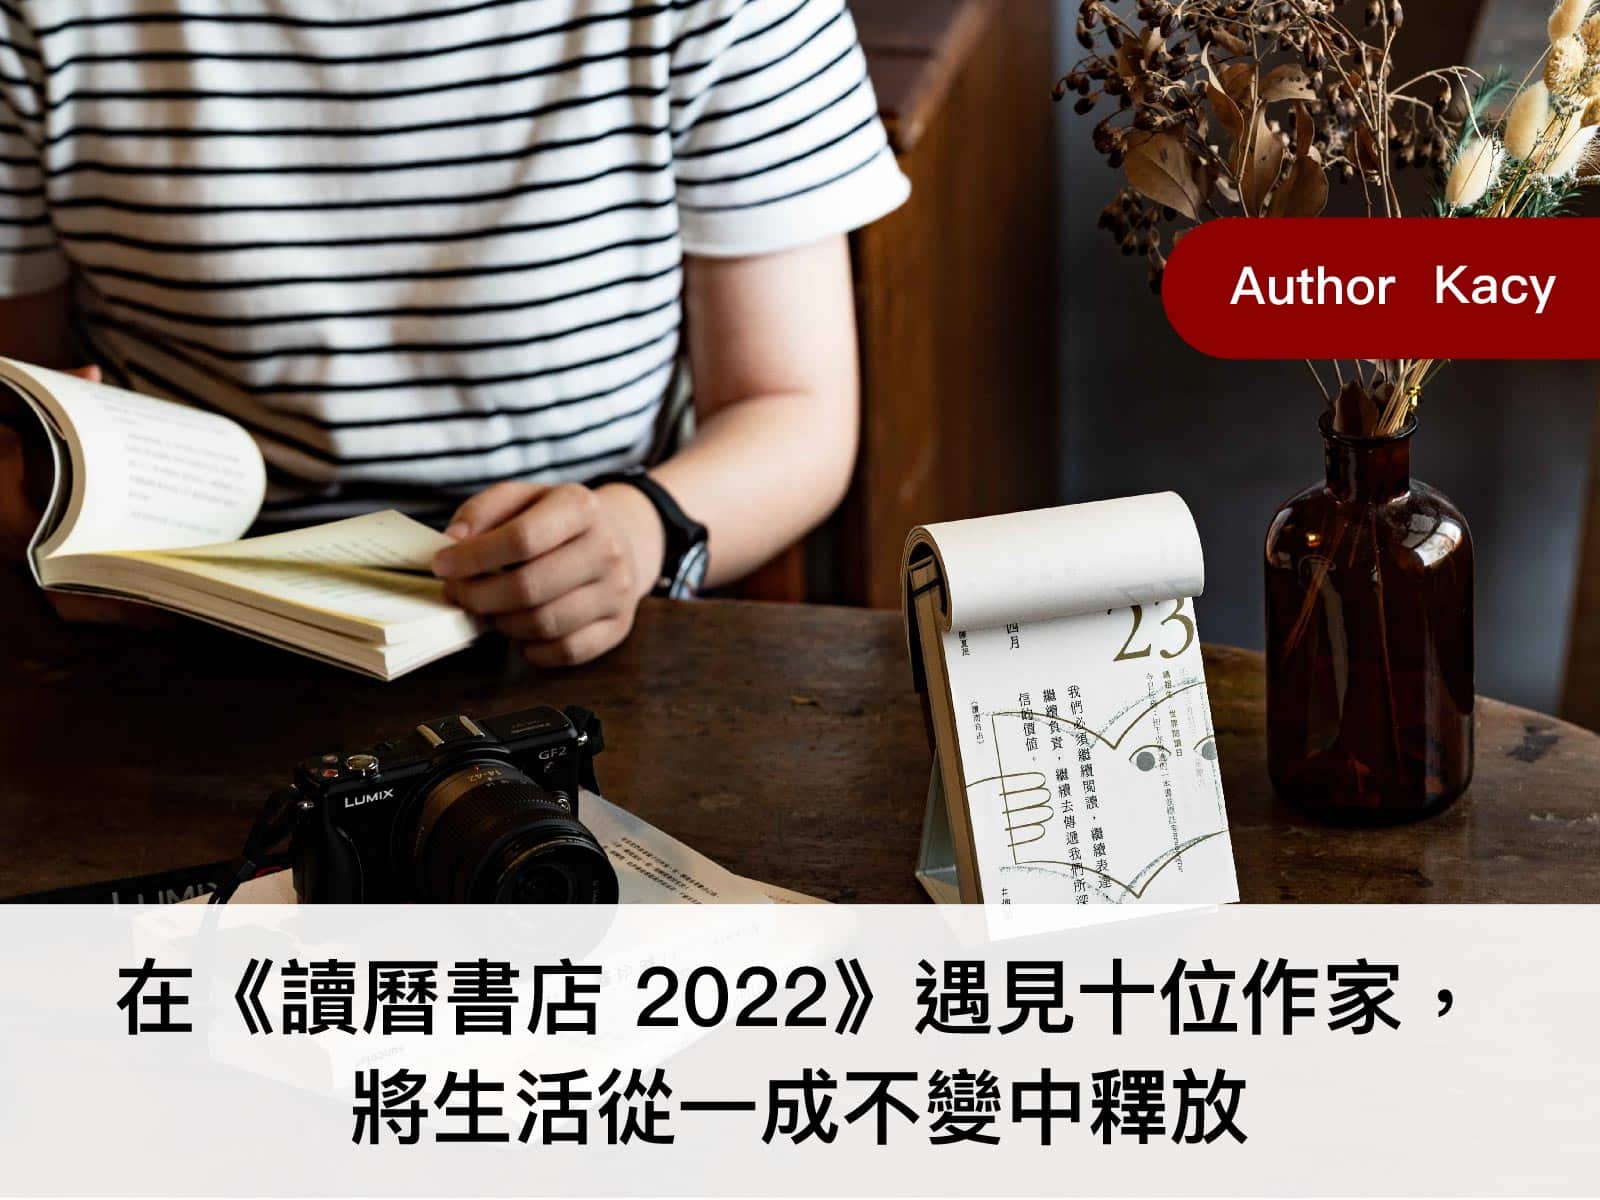 讀曆書店2022文藝其他 在《讀曆書店 2022》遇見十位作家，將生活從一成不變中釋放